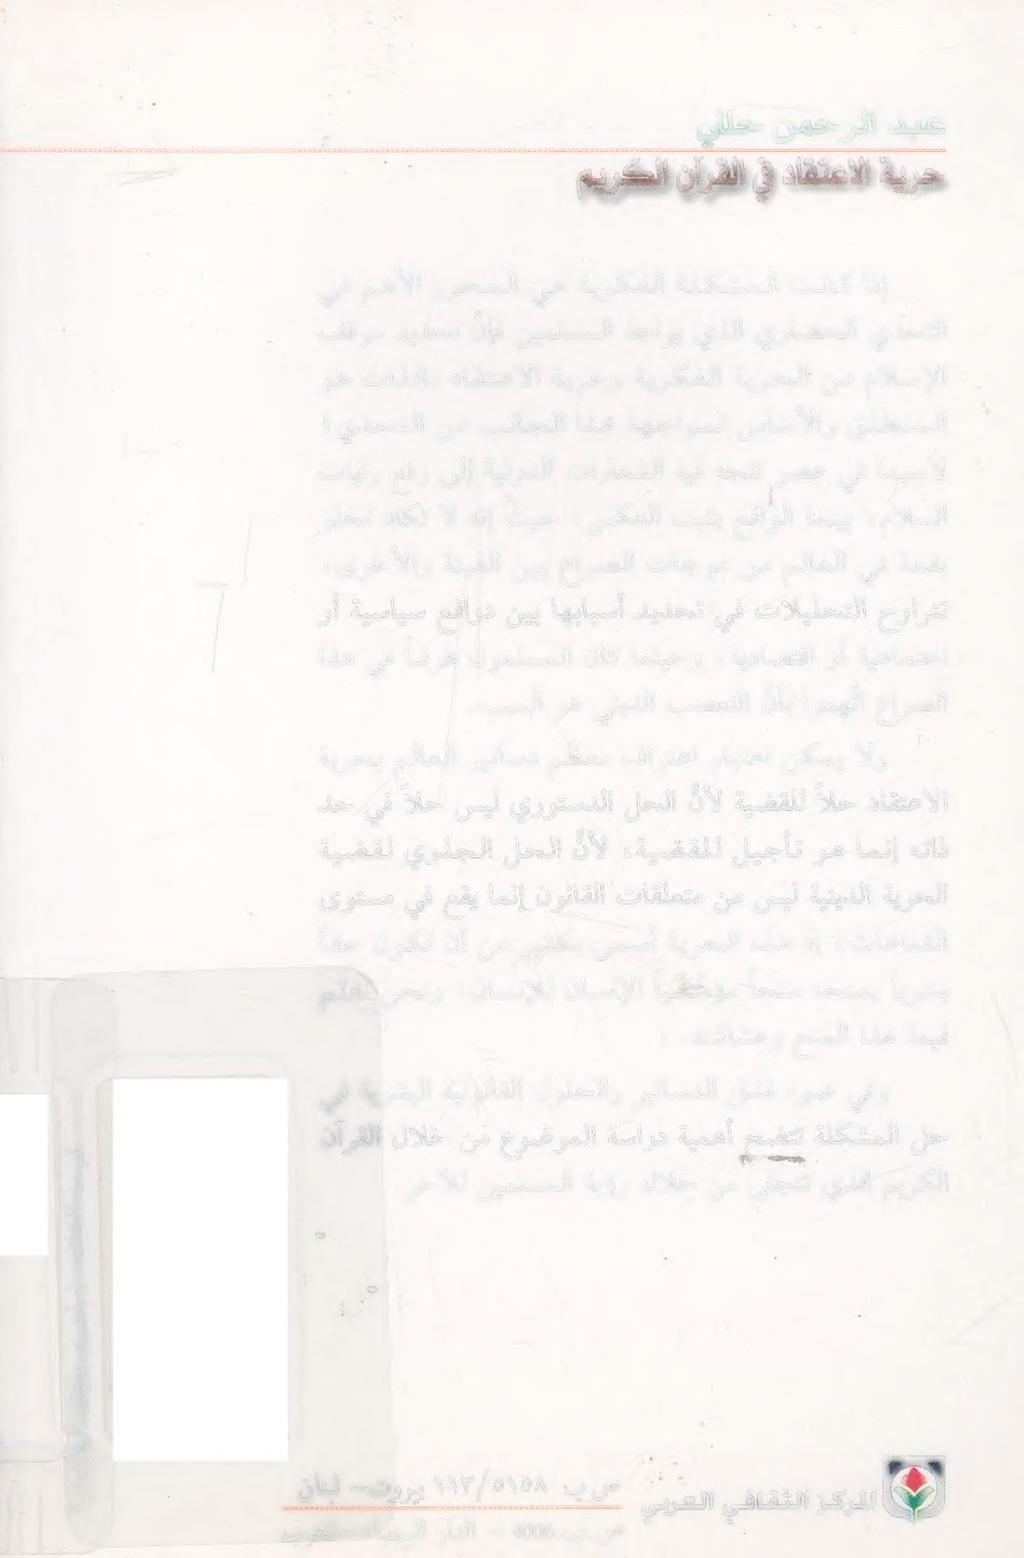 )ورازروصم ميهاربإ نائل -توربب 1١7/058 ب ص 